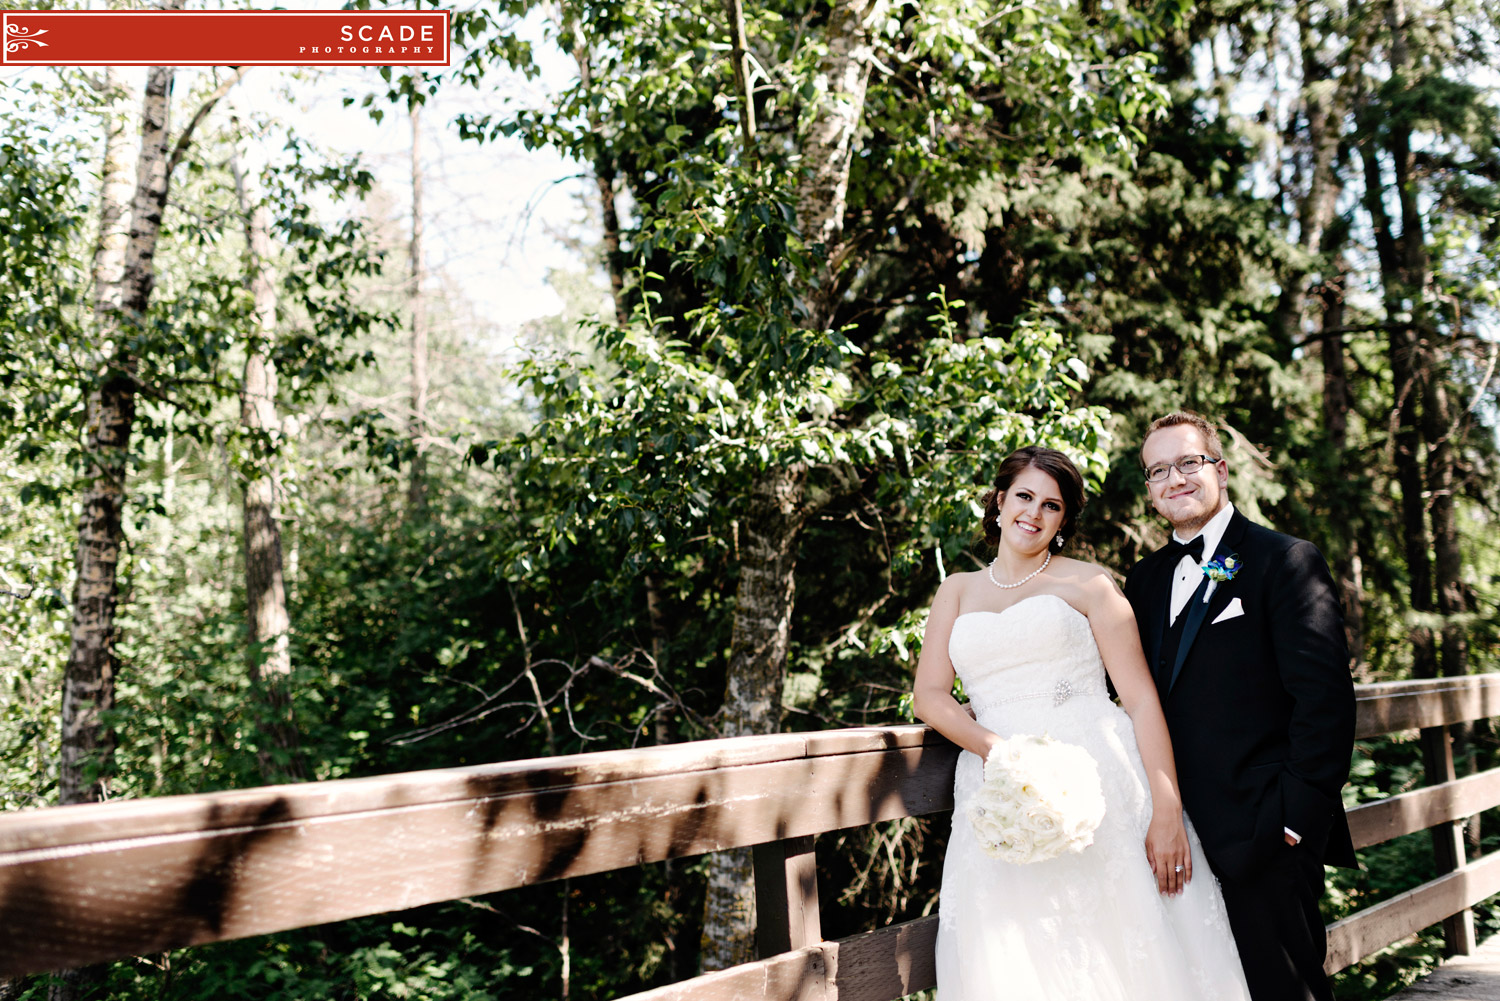 Edmonton Wedding Photography - Nicole and Luke - 0028.JPG